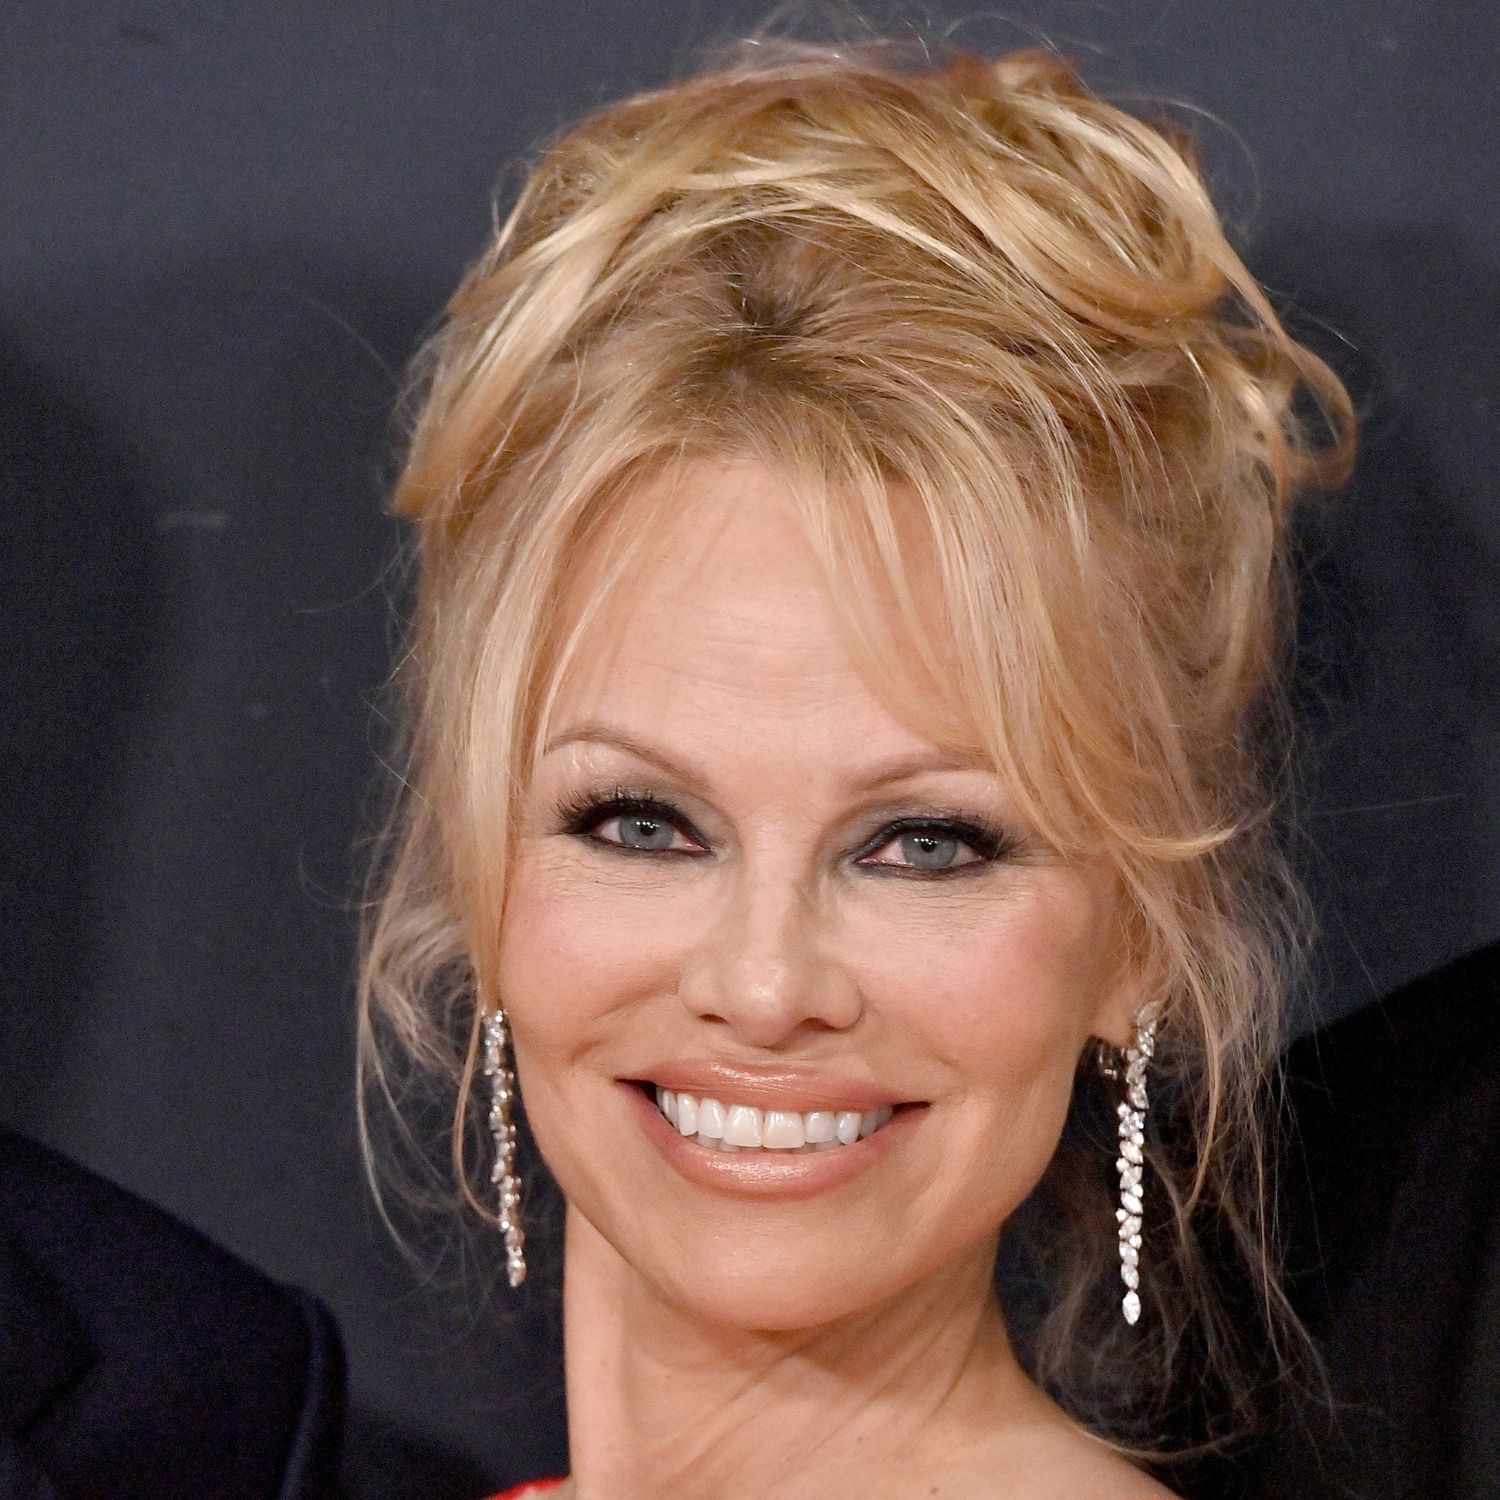 Pamela Anderson com seu penteado característico.